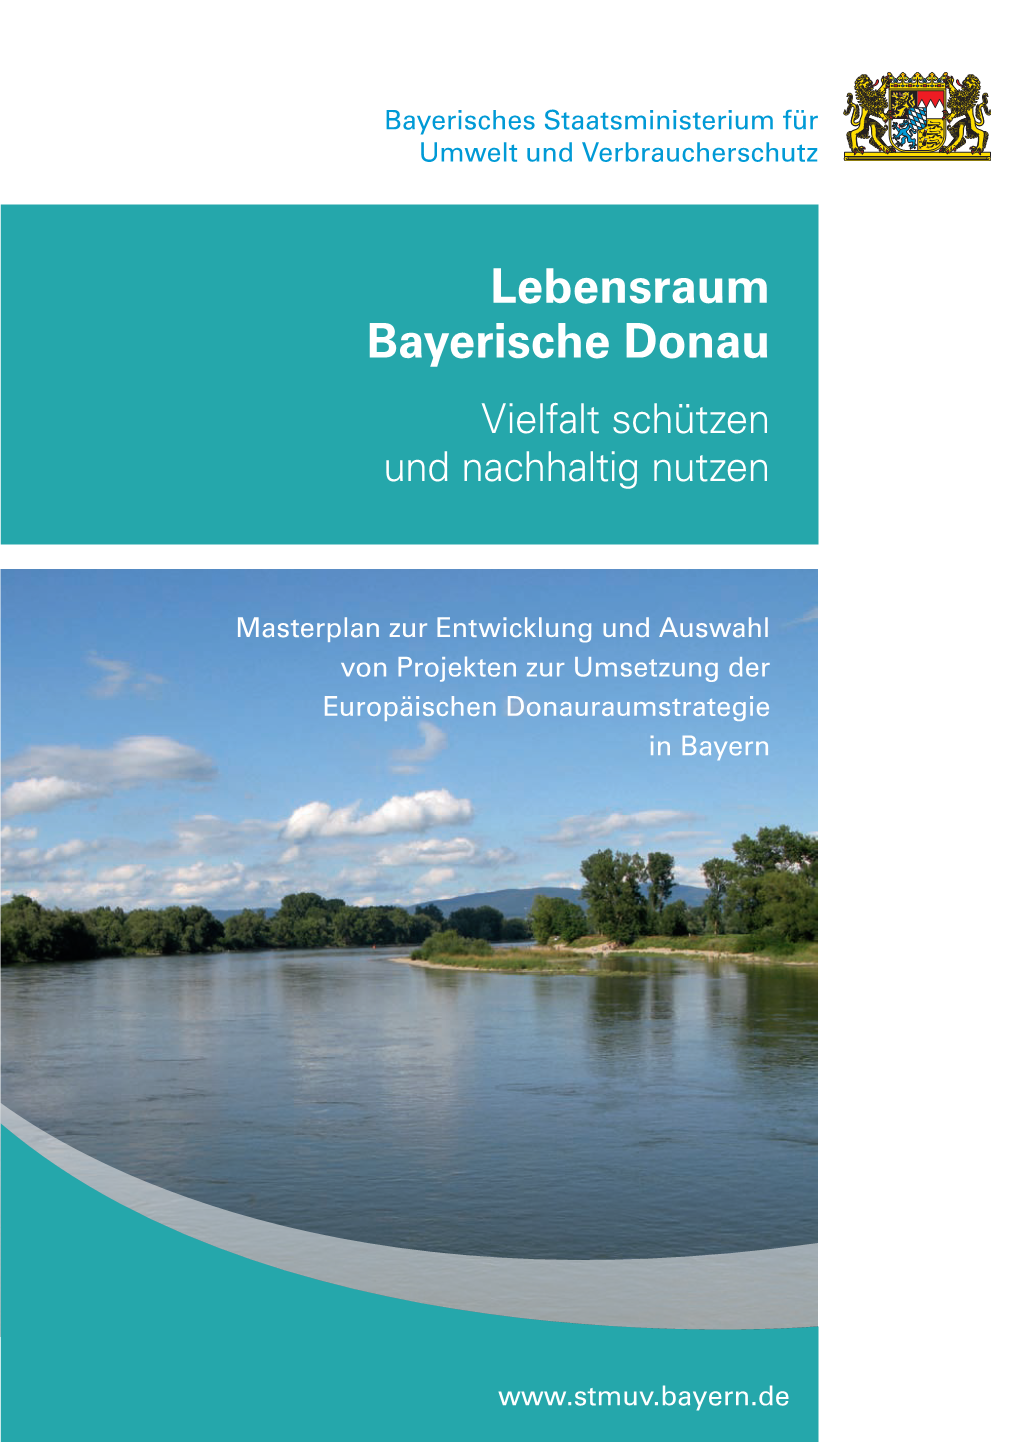 Masterplan Lebensraum Bayerische Donau